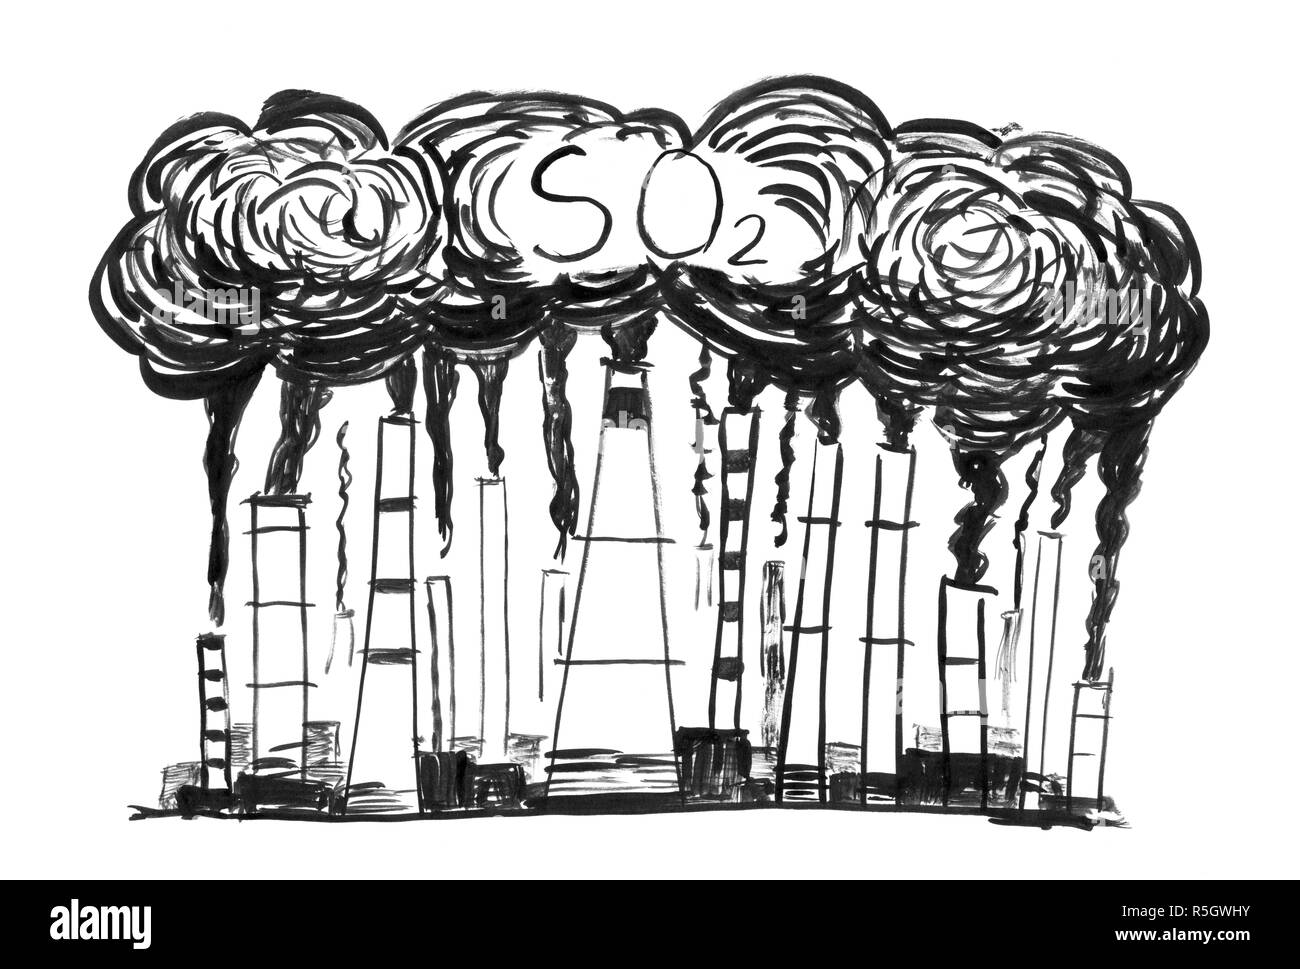 Inchiostro nero Grunge disegno a mano del fumo fornace, il concetto di industria o fabbrica in modo2 dell'inquinamento atmosferico Foto Stock